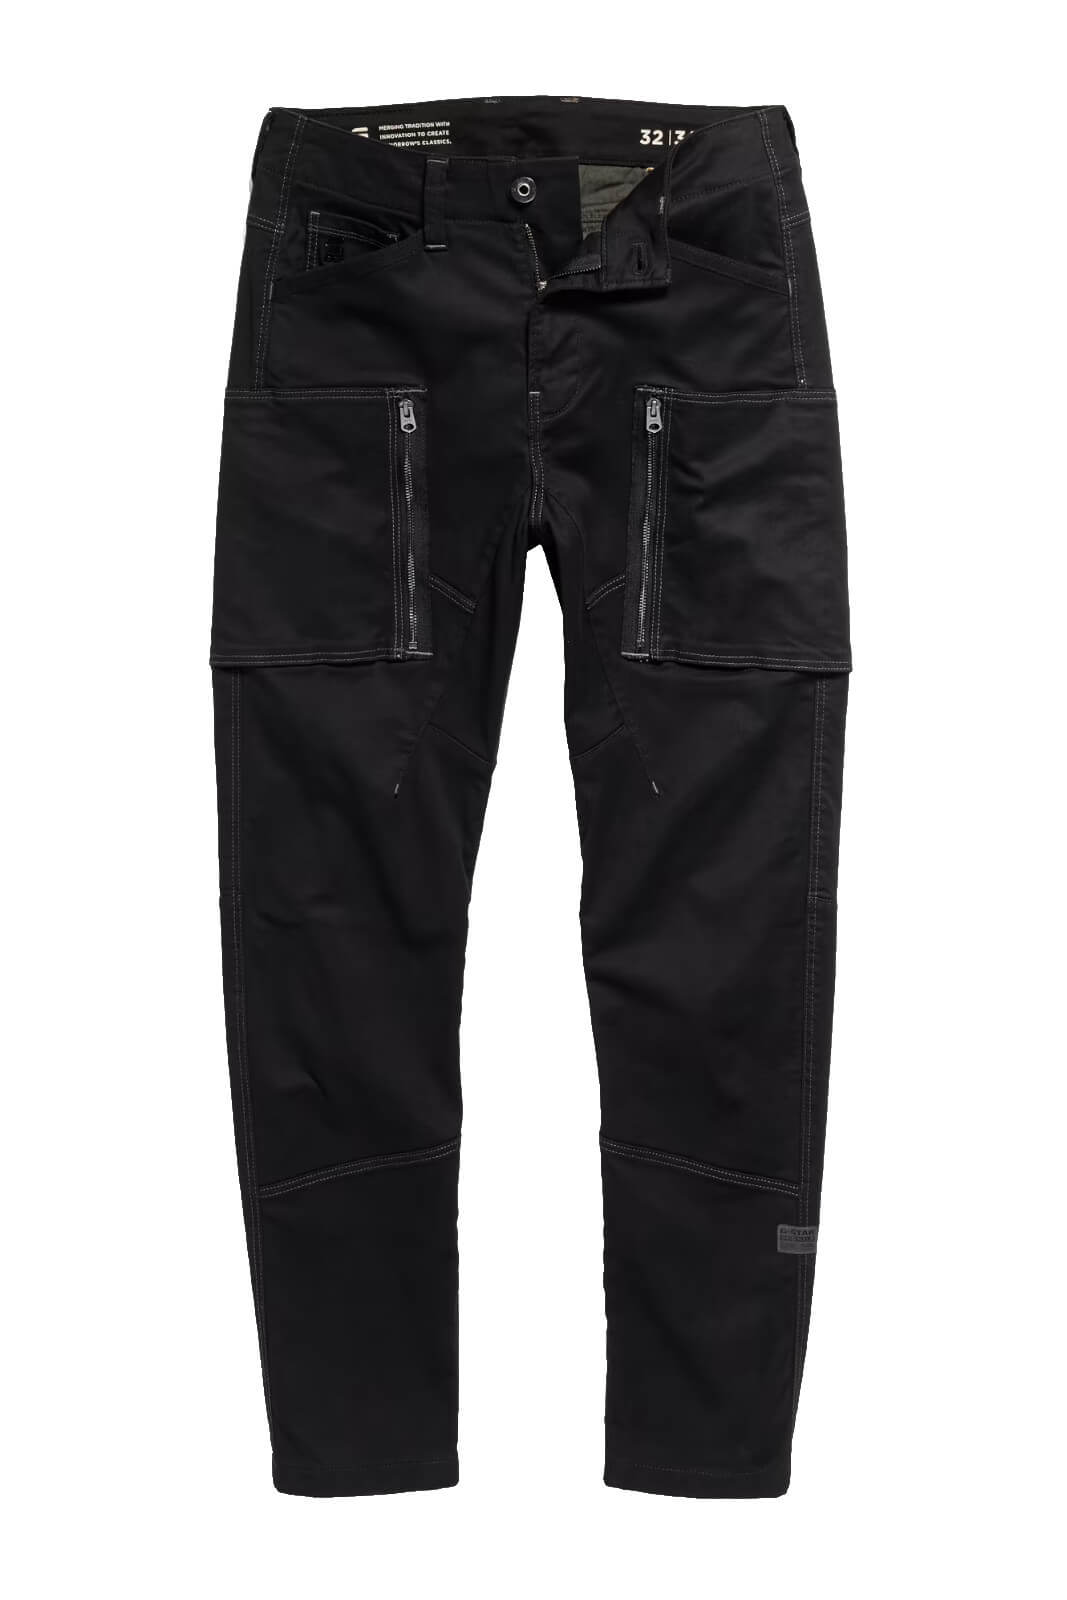 G-Star RAW jeans uomo ZIP POCKET 3D SKINNY CARGO